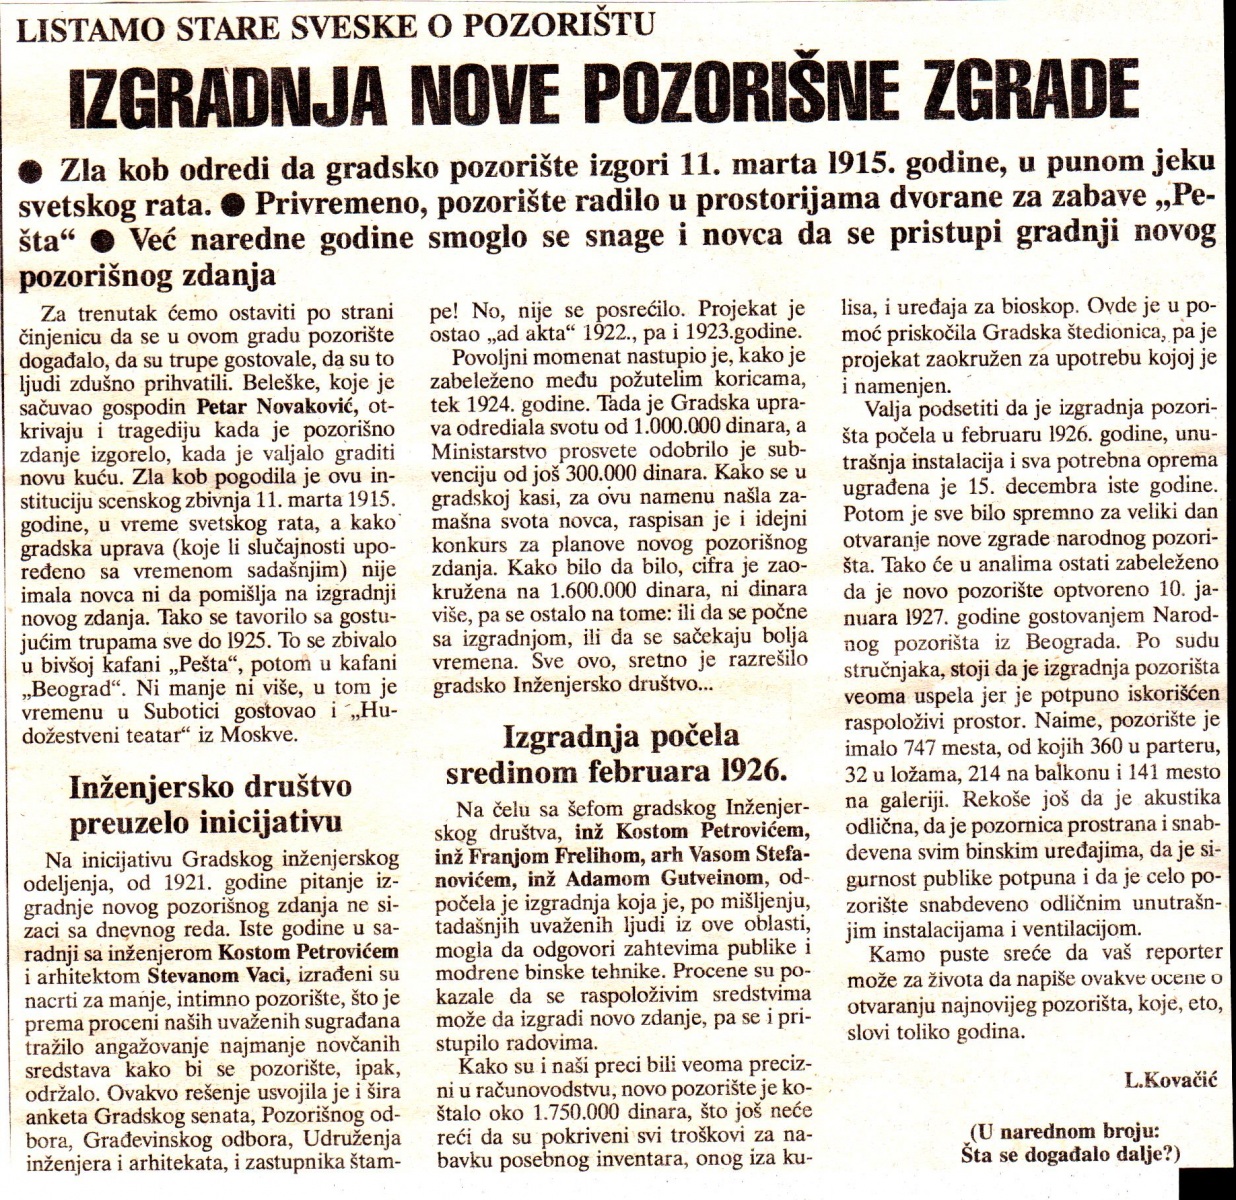 SUBOTICKE_NOVINE-220193-IZGRADNJA_POZORISTA